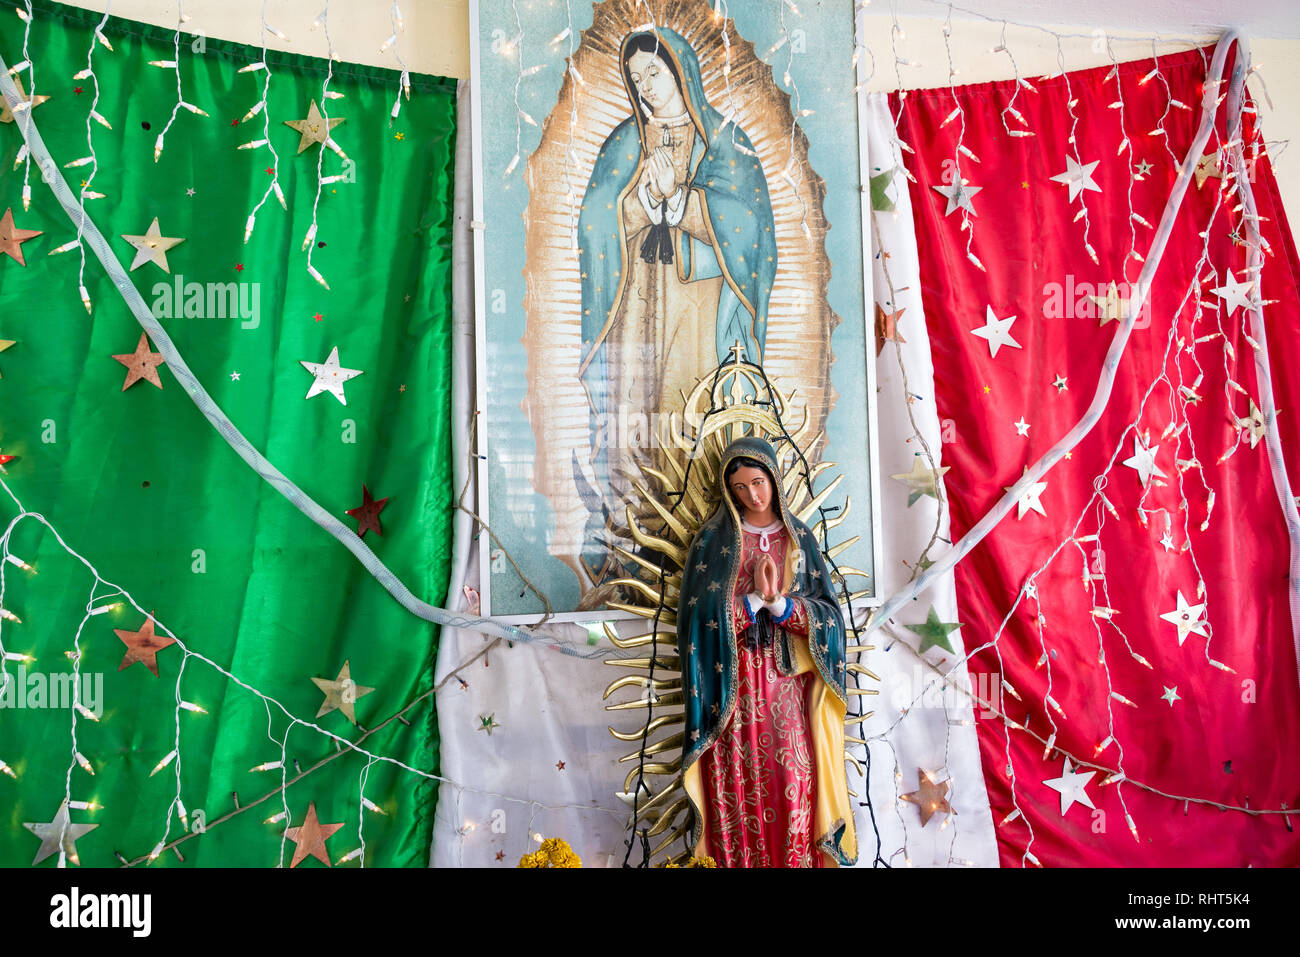 RIO LAGARTOS, MEXIKO - 14. Februar: Statue der Jungfrau Maria vor der Mexikanischen Flagge in einem Busbahnhof in Rio Lagartos, Mexiko am 14. Februar 2017 Stockfoto